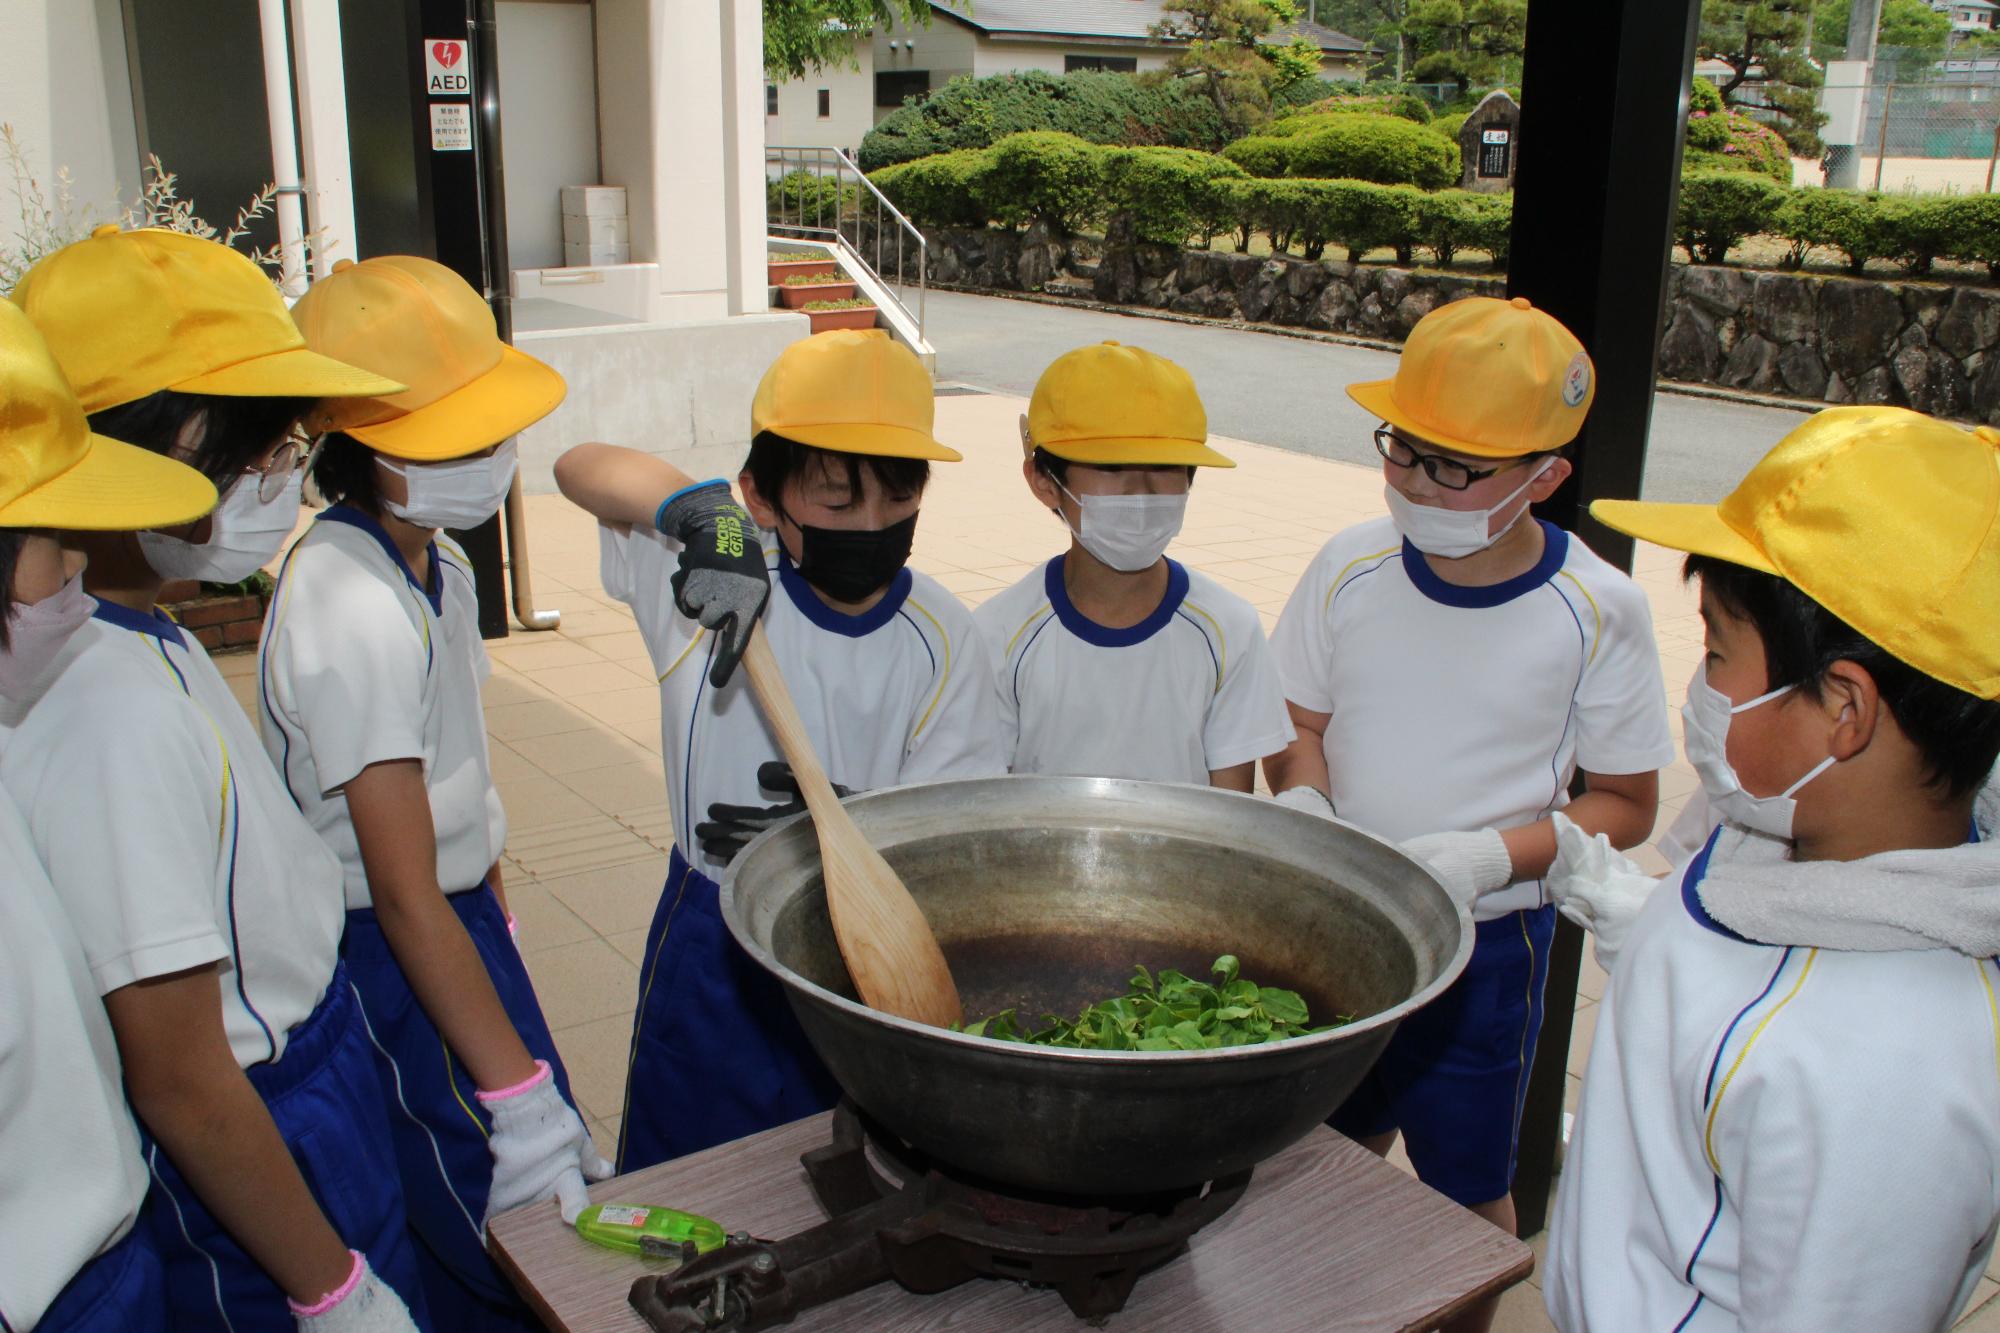 摘んだ茶葉を鍋で煎る作業をしている小学生の写真